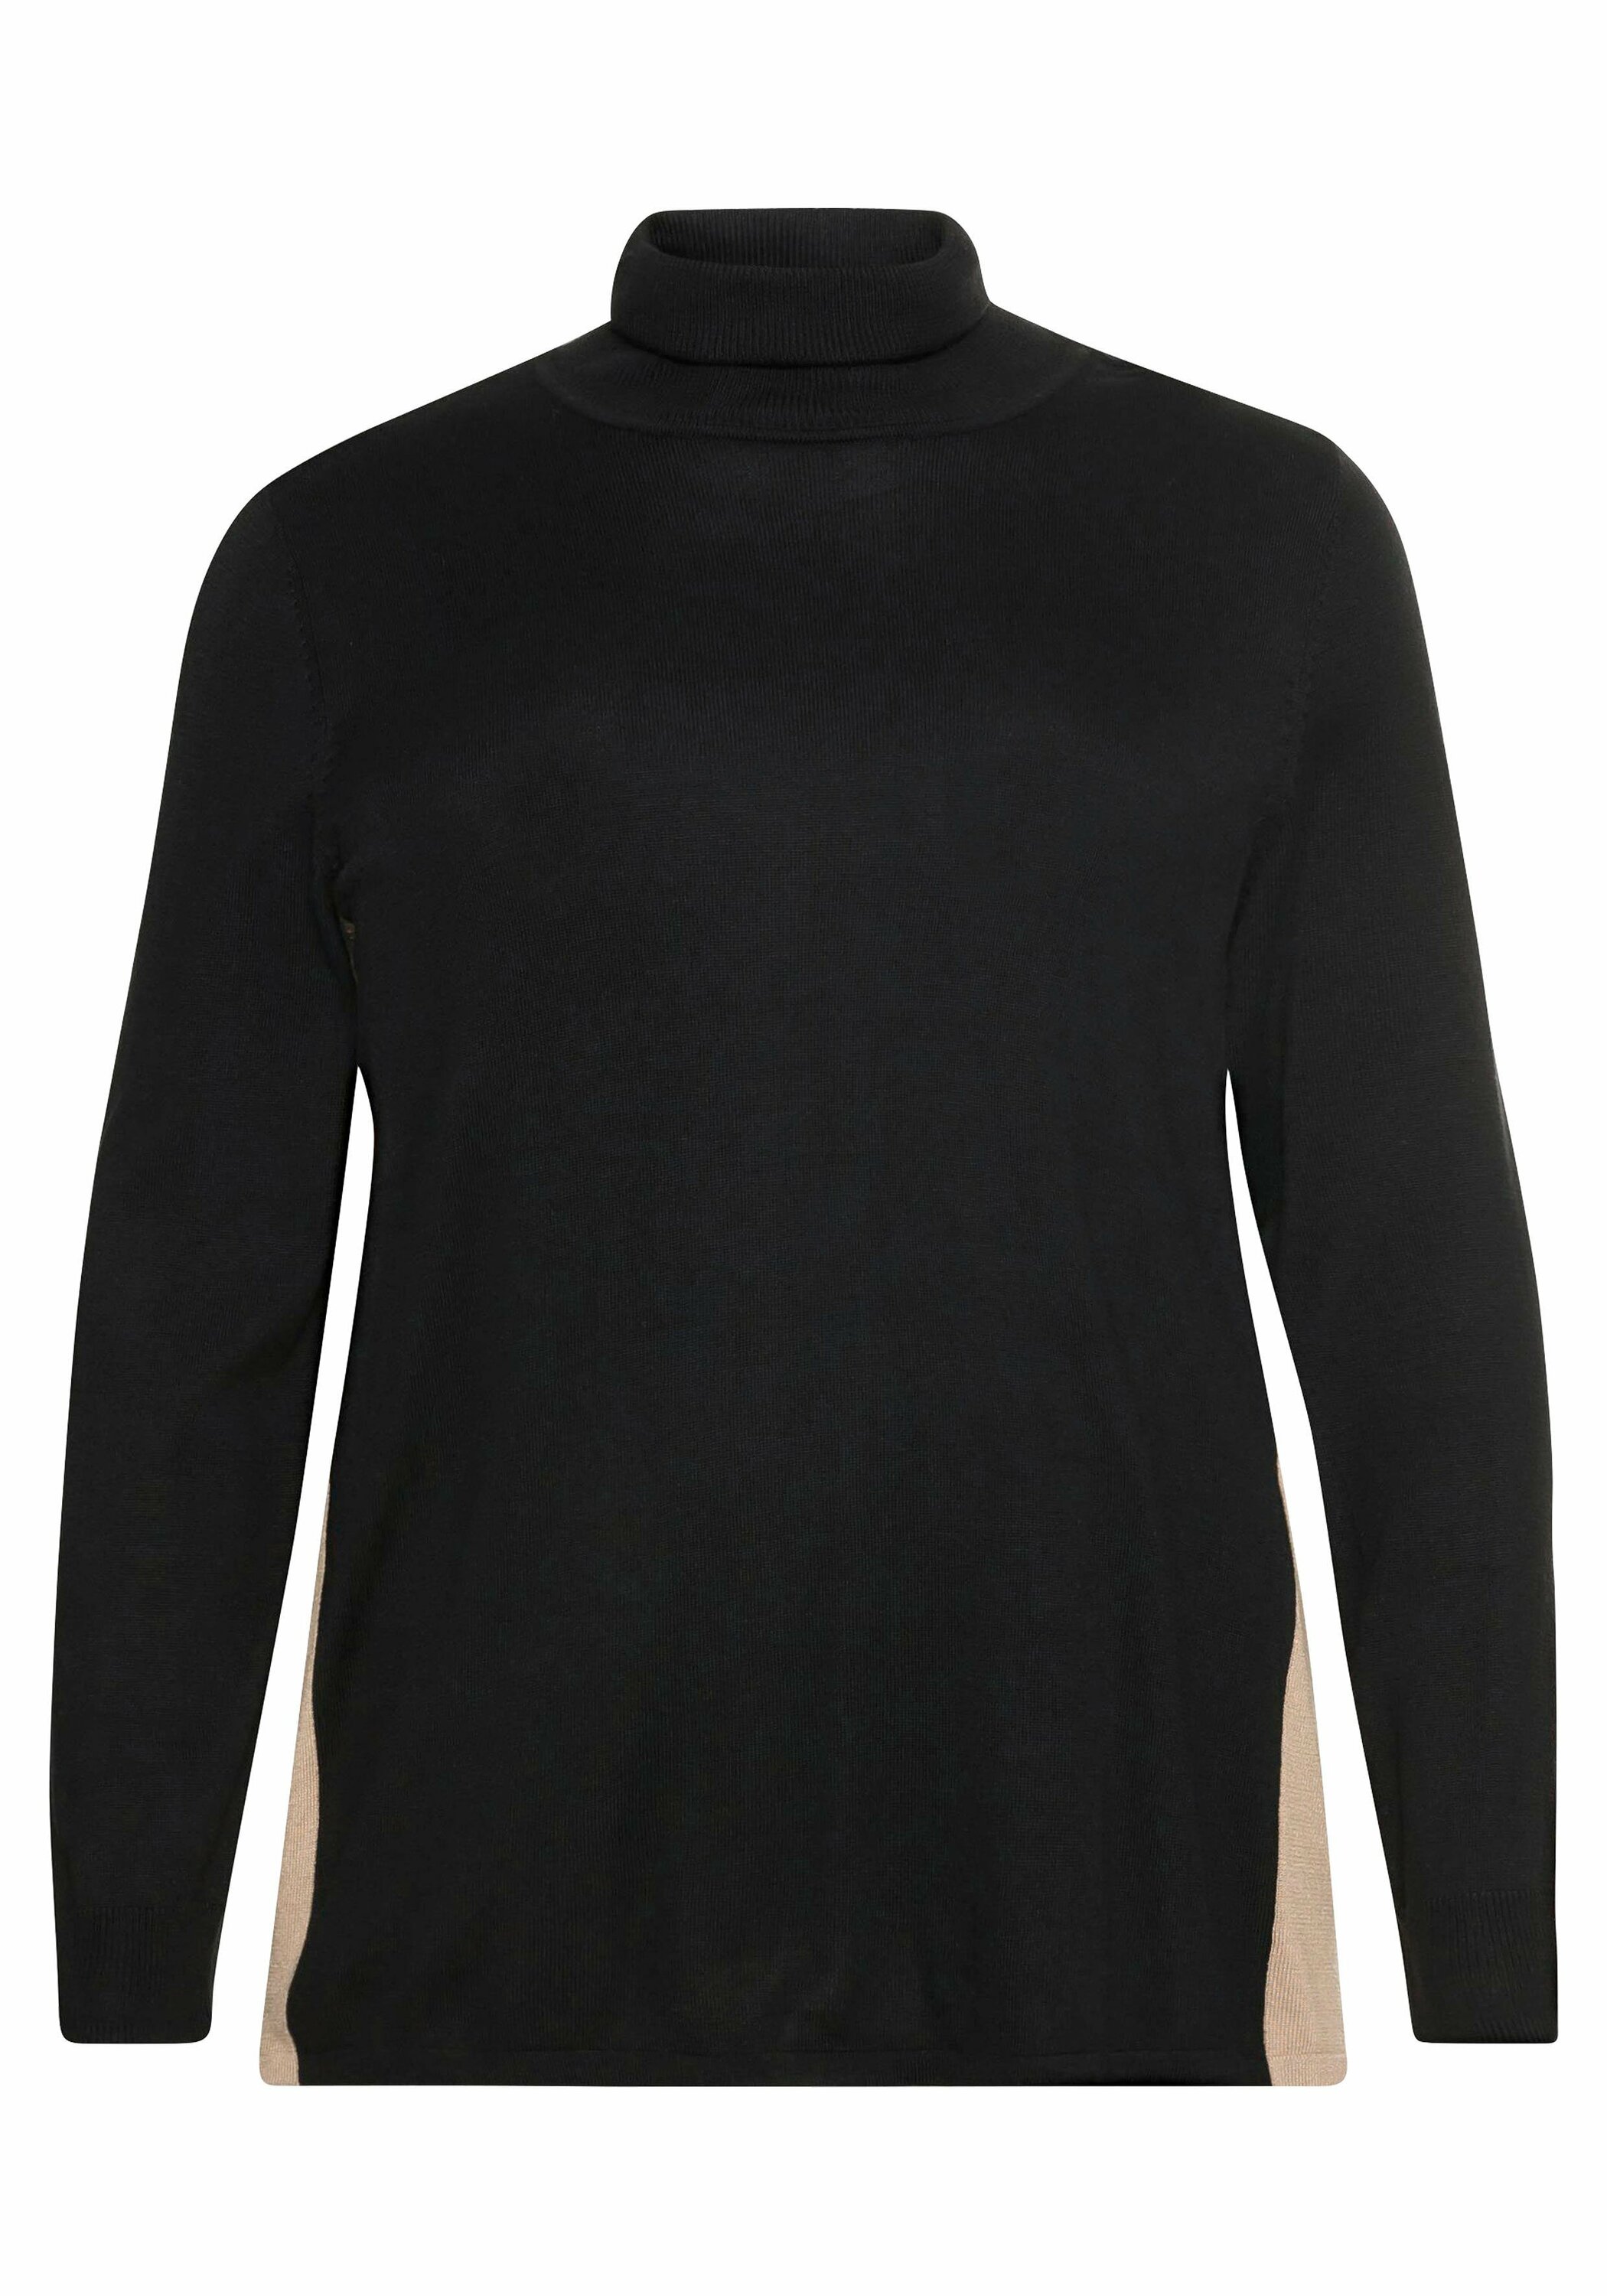 Kobiety Odzież SHEEGO Sweter w kolorze Czarnym 